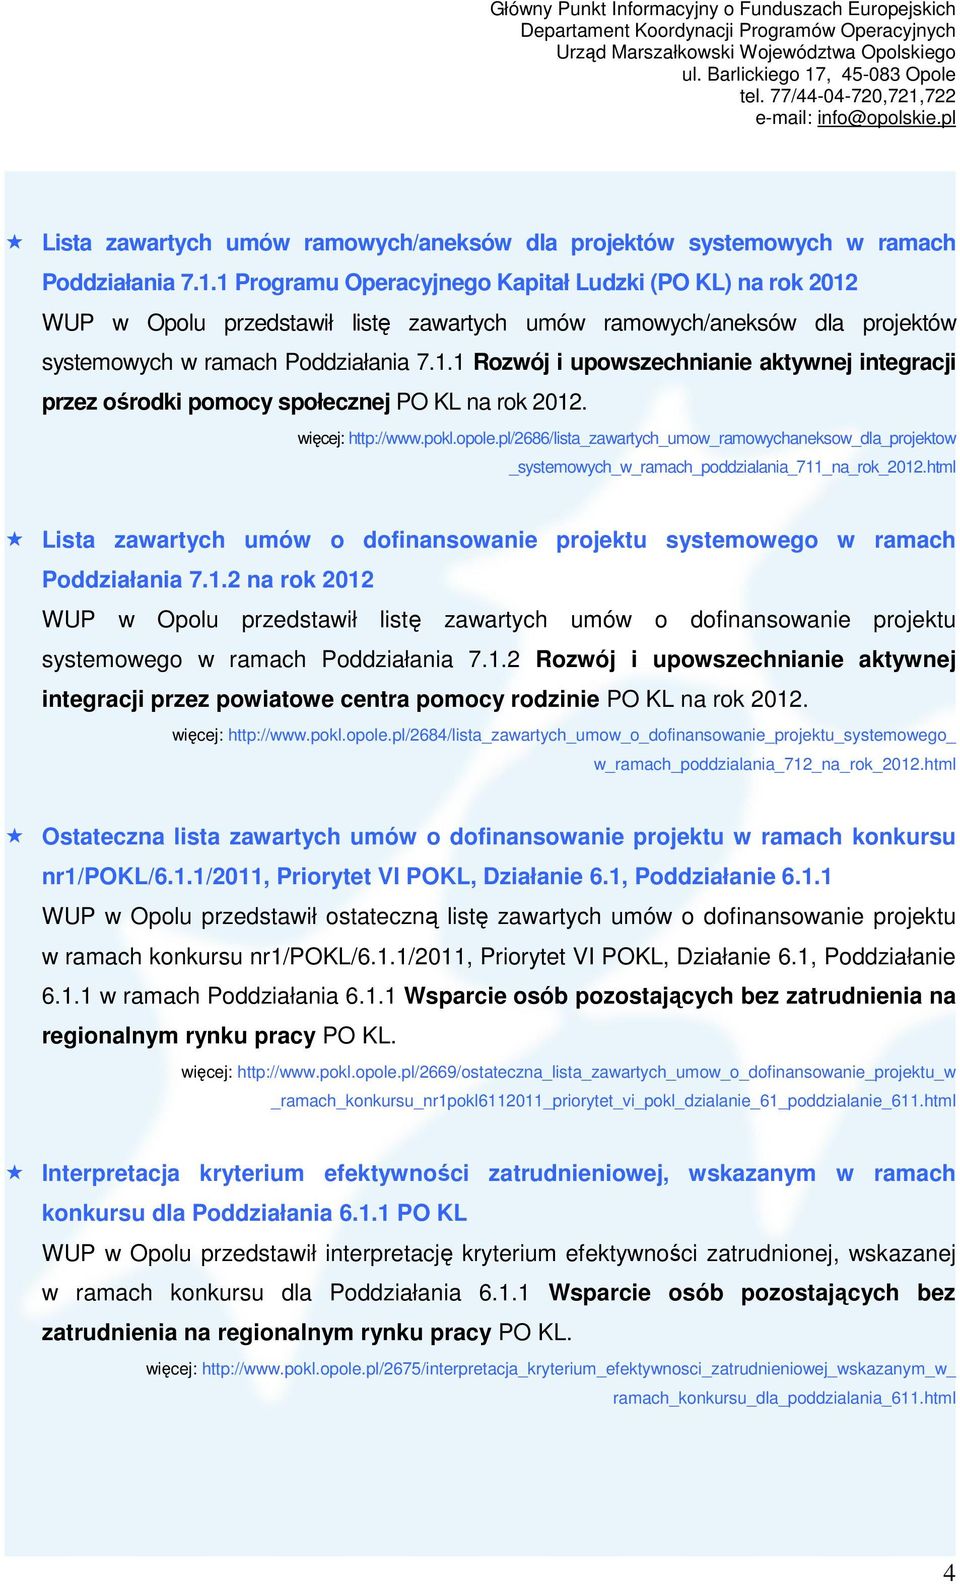 więcej: http://www.pokl.opole.pl/2686/lista_zawartych_umow_ramowychaneksow_dla_projektow _systemowych_w_ramach_poddzialania_711_na_rok_2012.